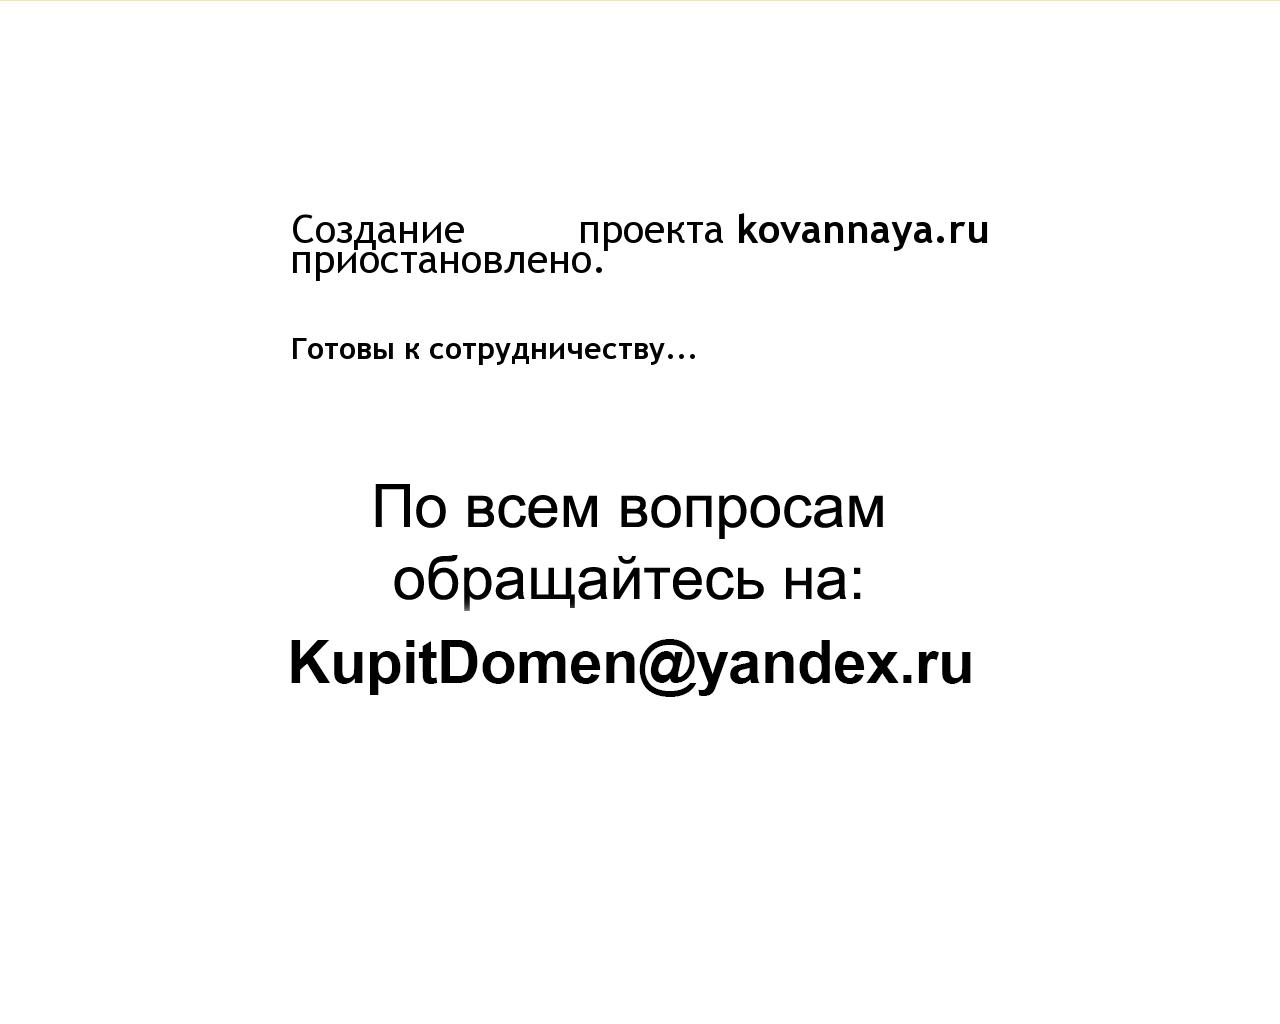 Изображение сайта kovannaya.ru в разрешении 1280x1024